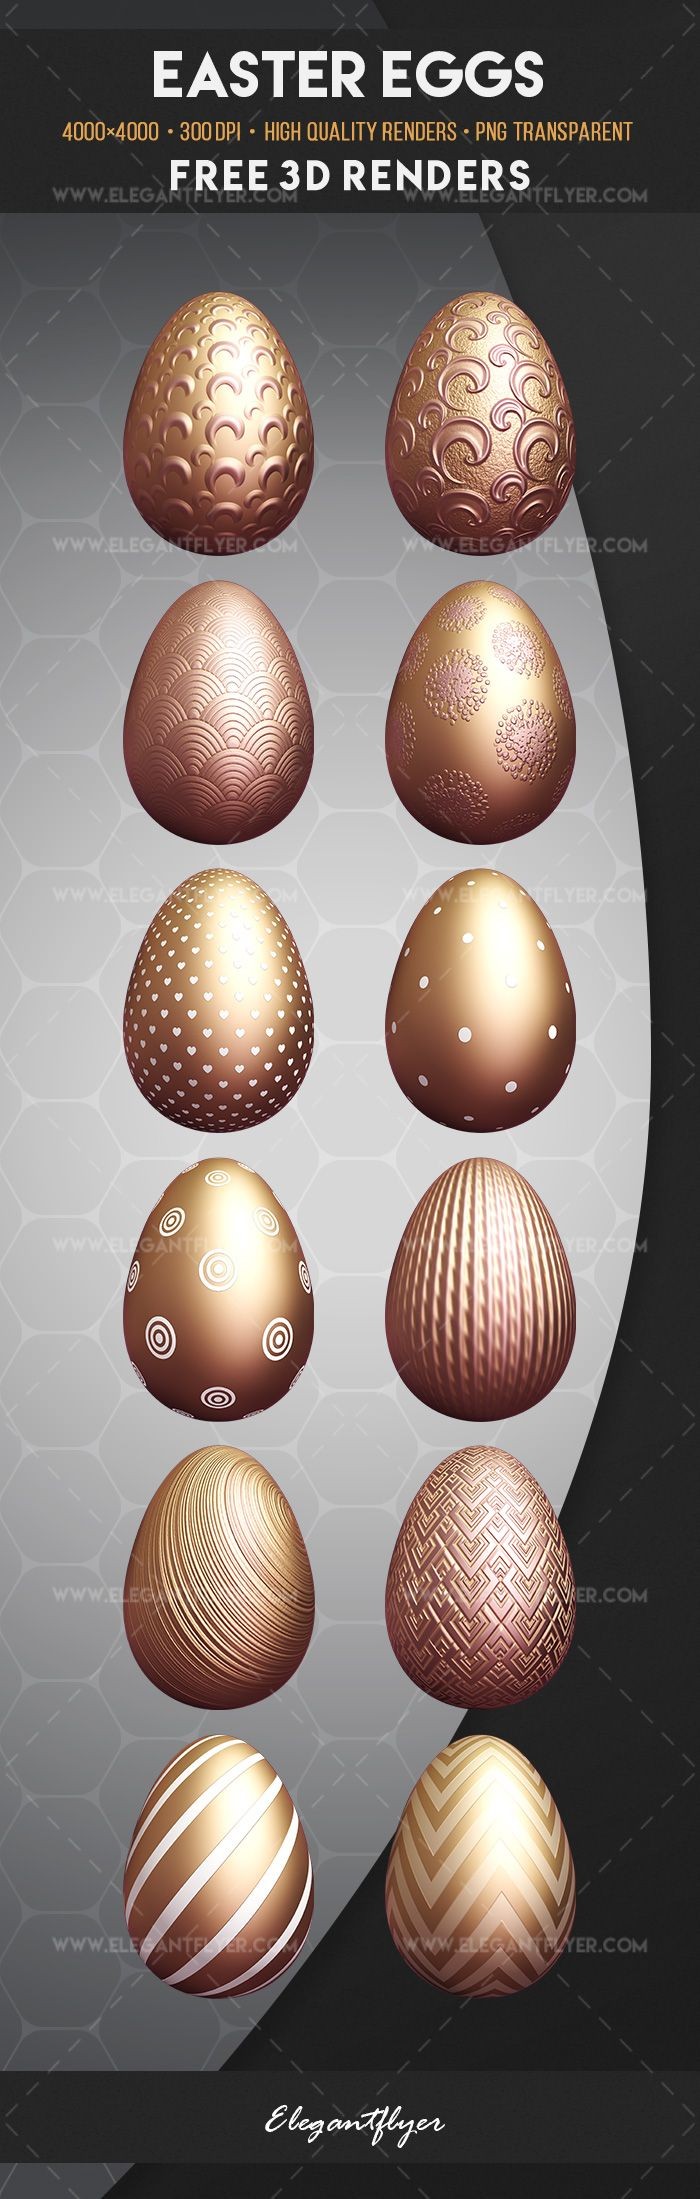 Easter Eggs by ElegantFlyer